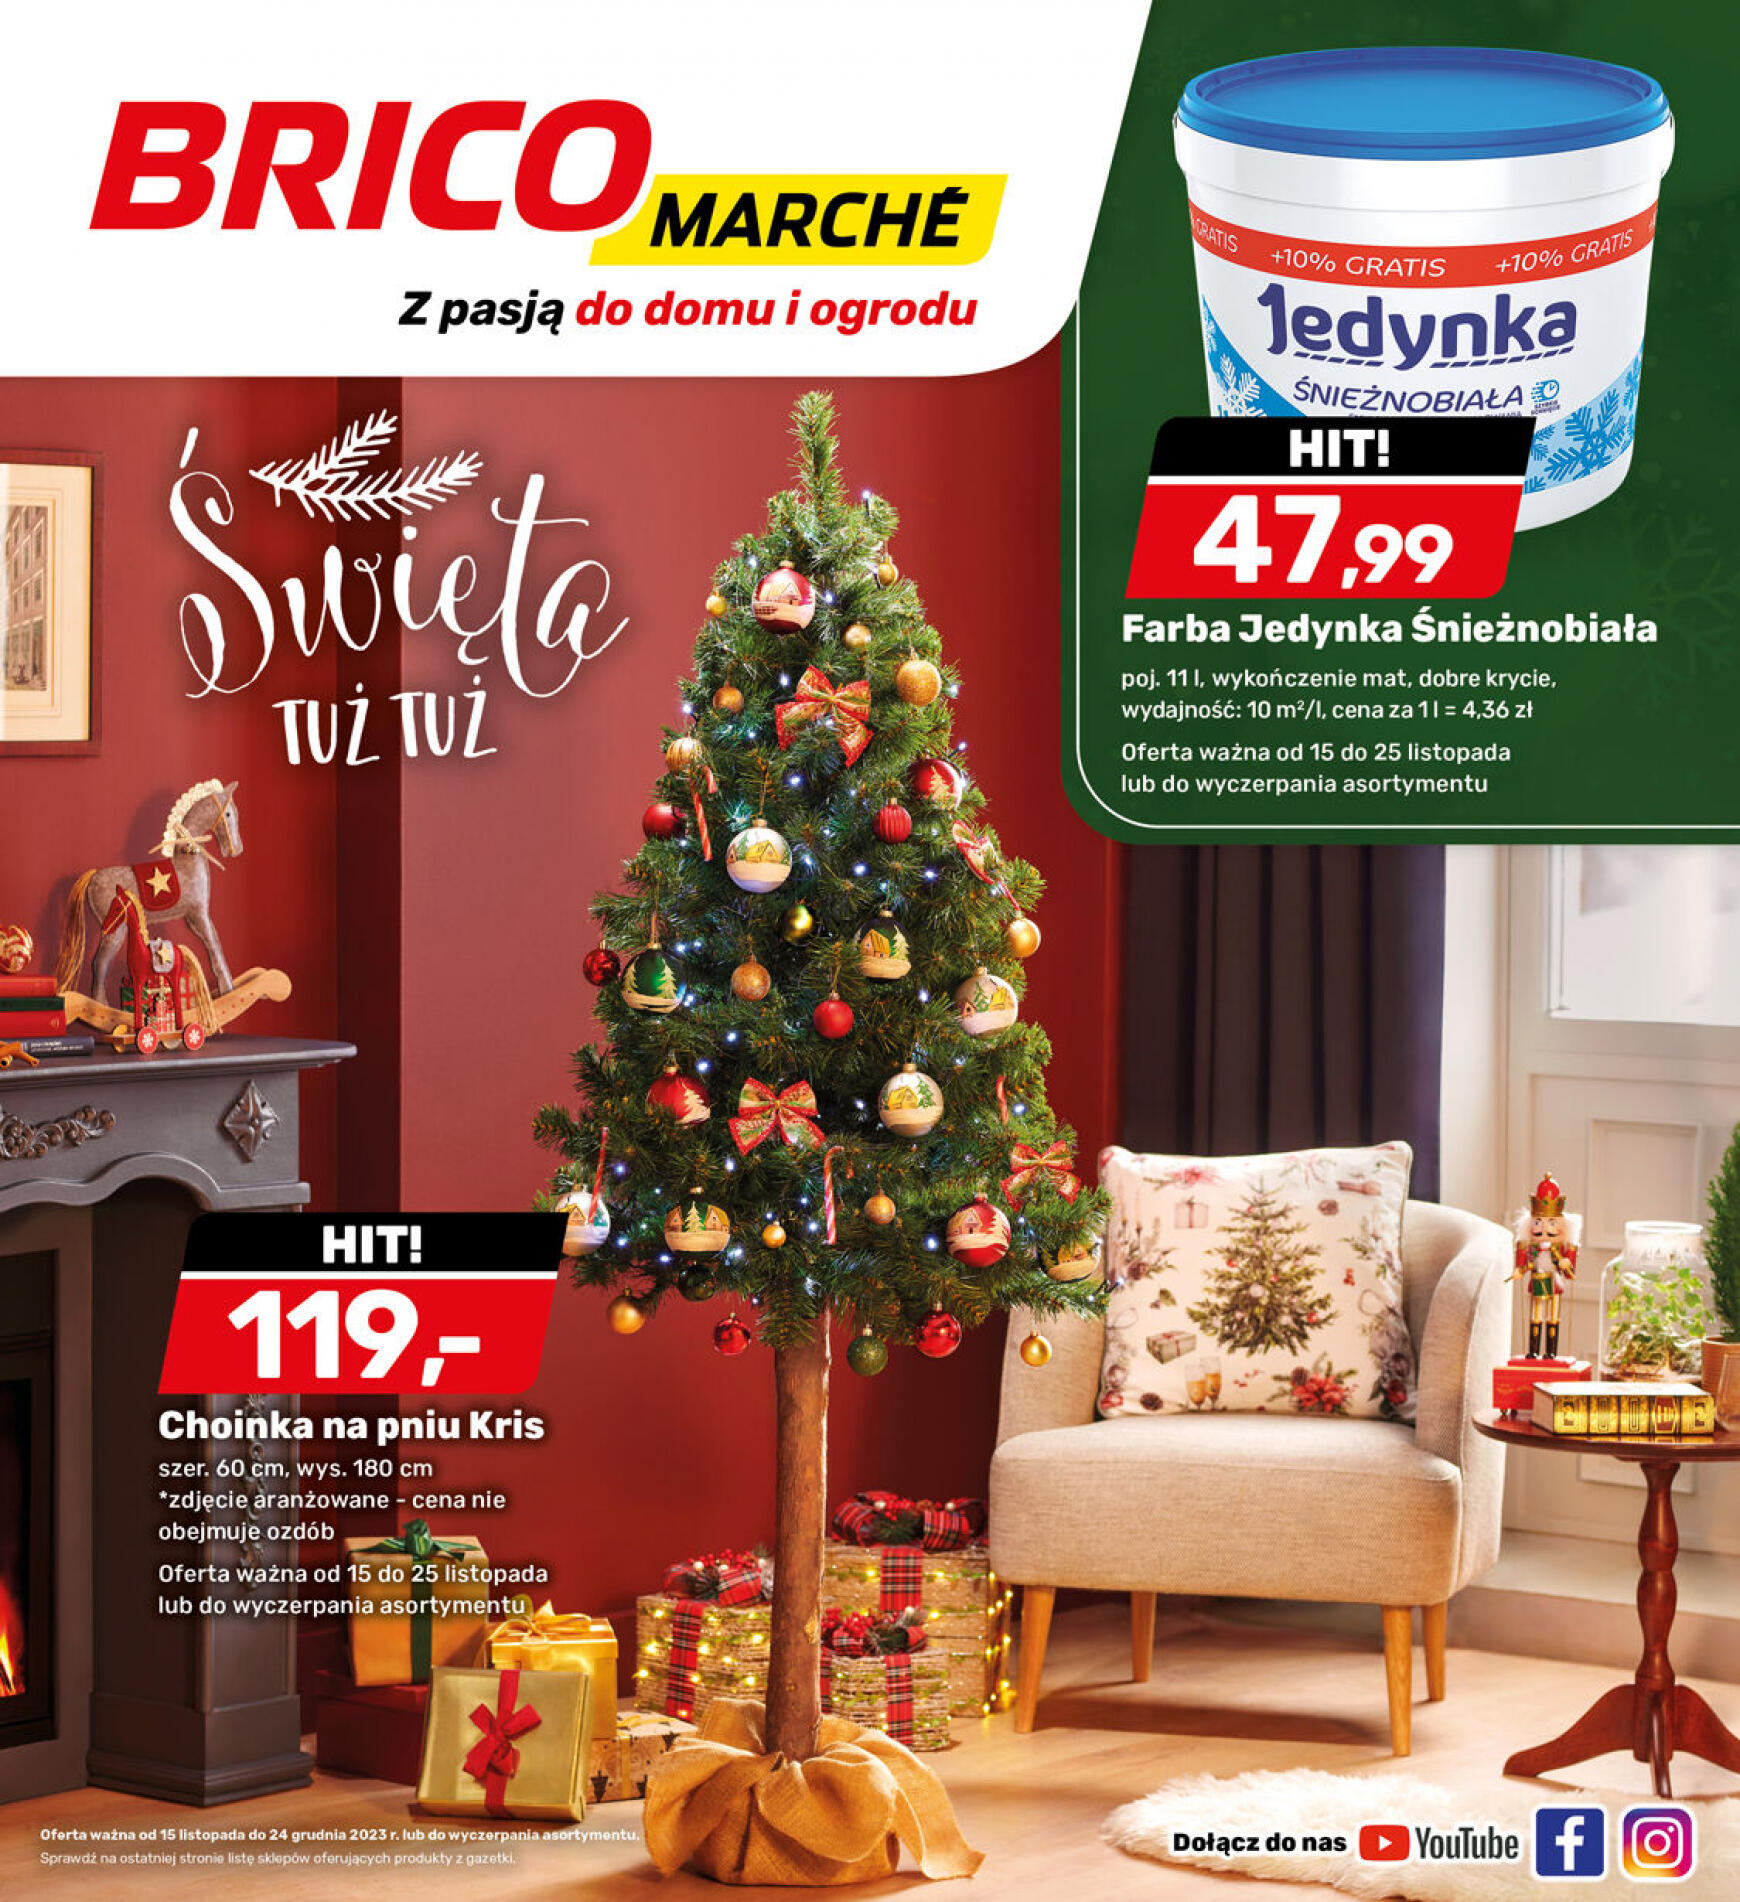 brico-marche - - Bricomarche - page: 22